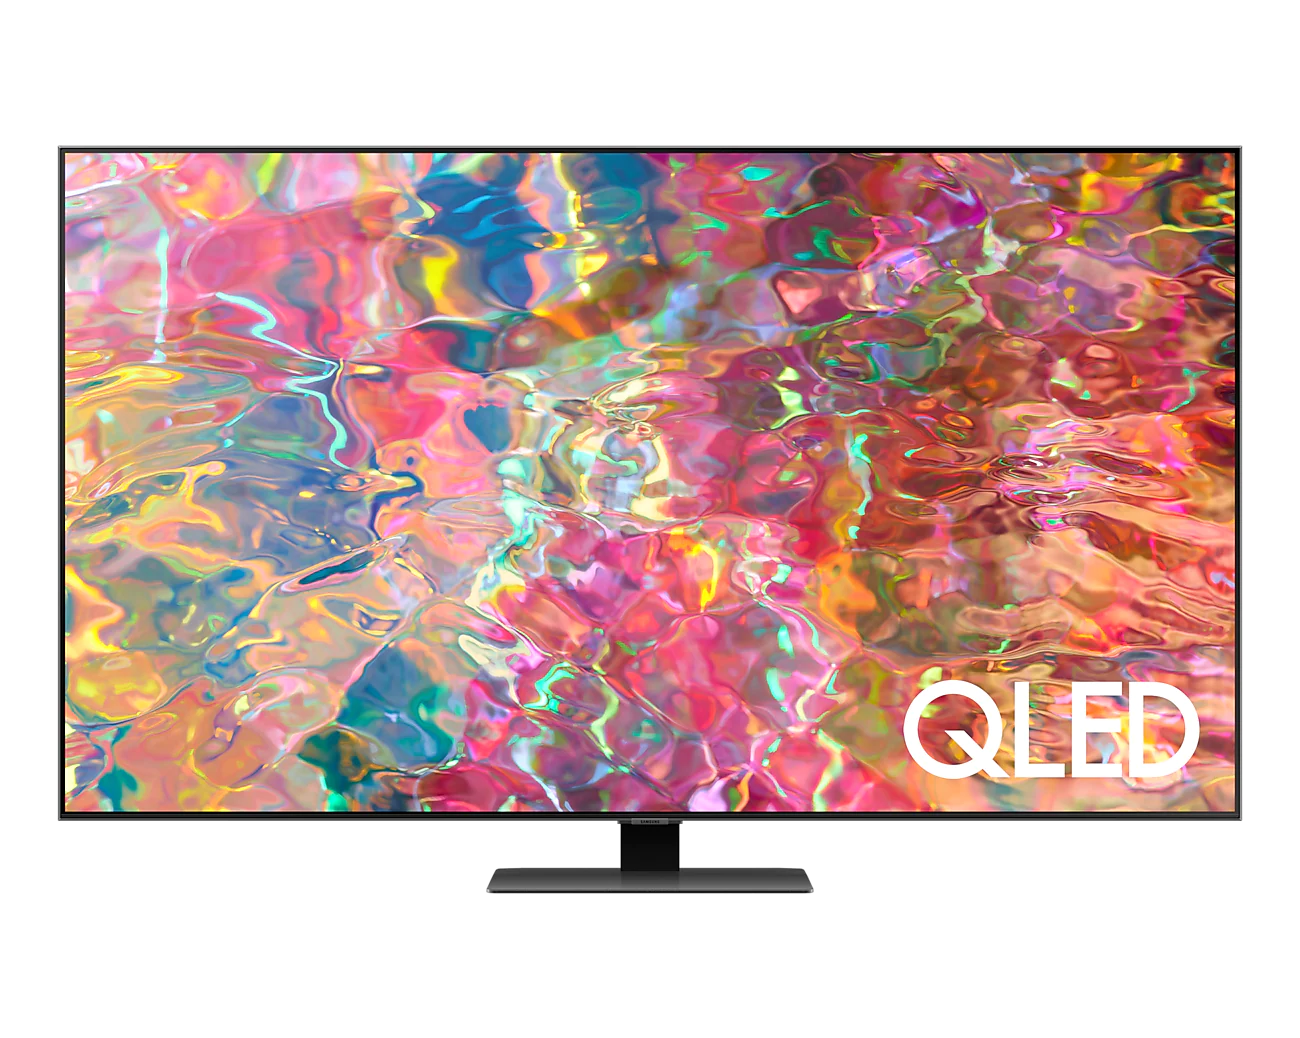 Televizor qled samsung smart tv qe65q80b 163cm 4k ultra hd negru